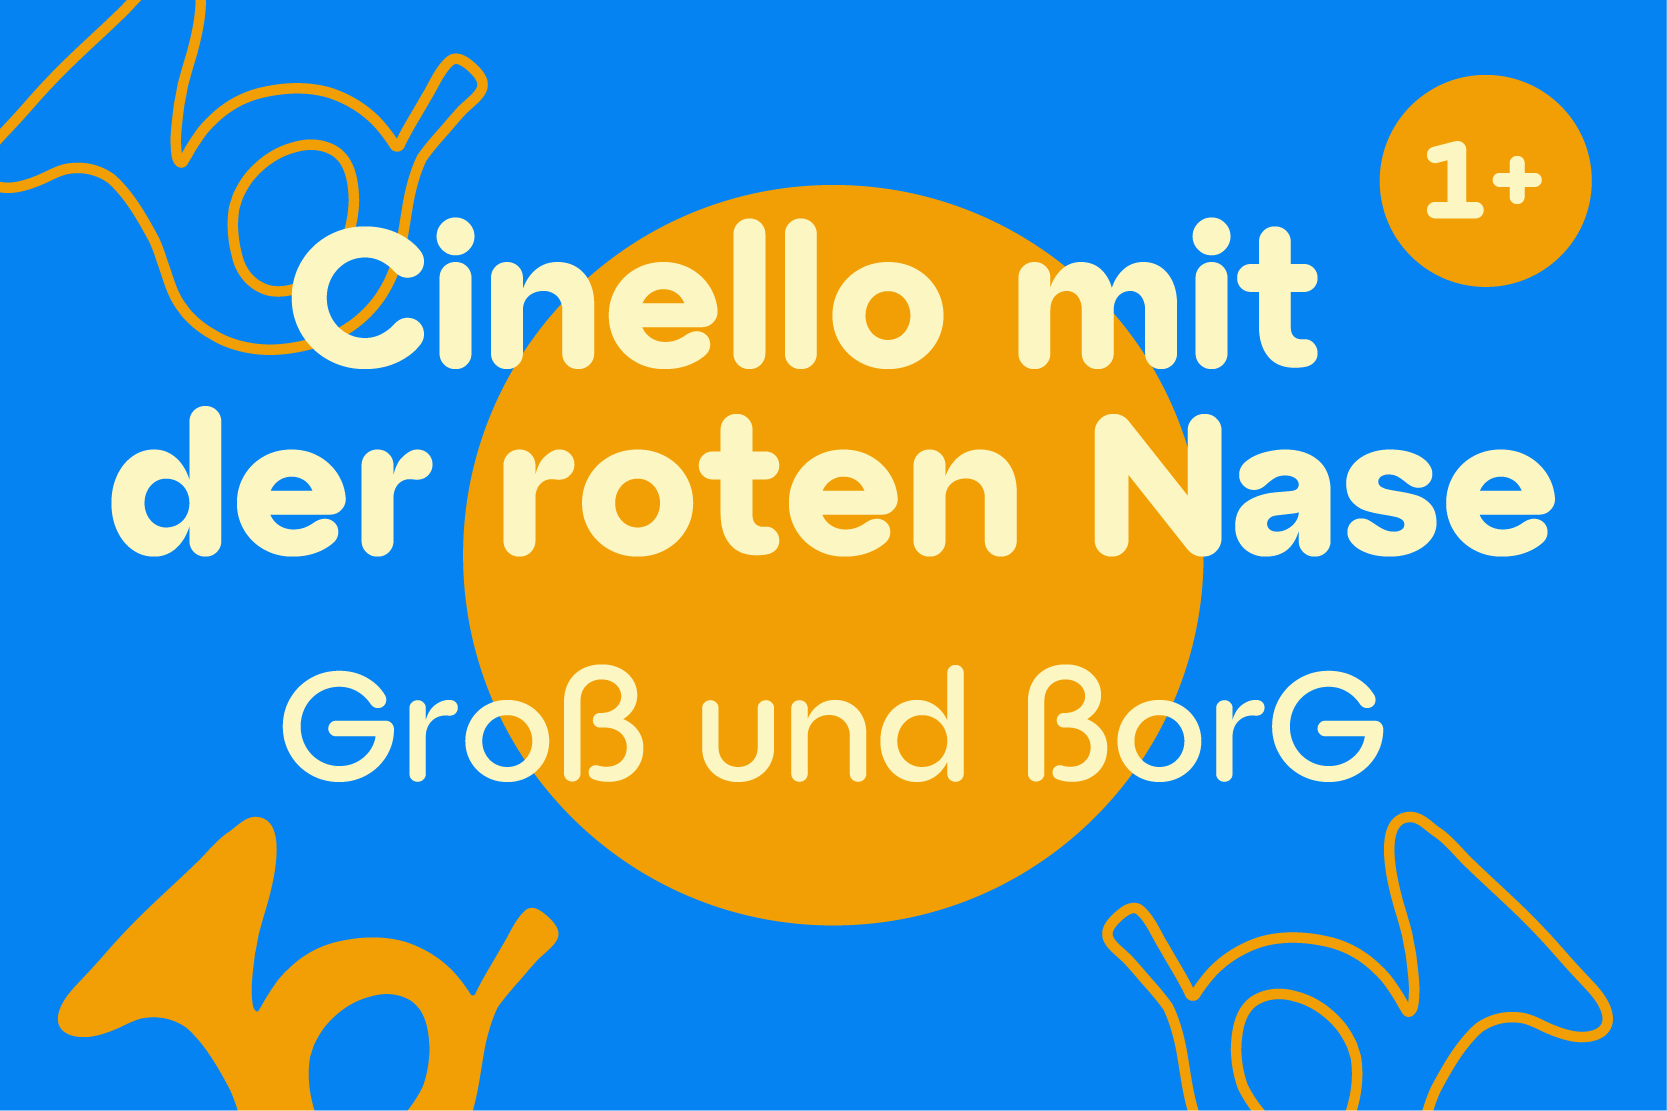 Cinello - Gross und ßorG